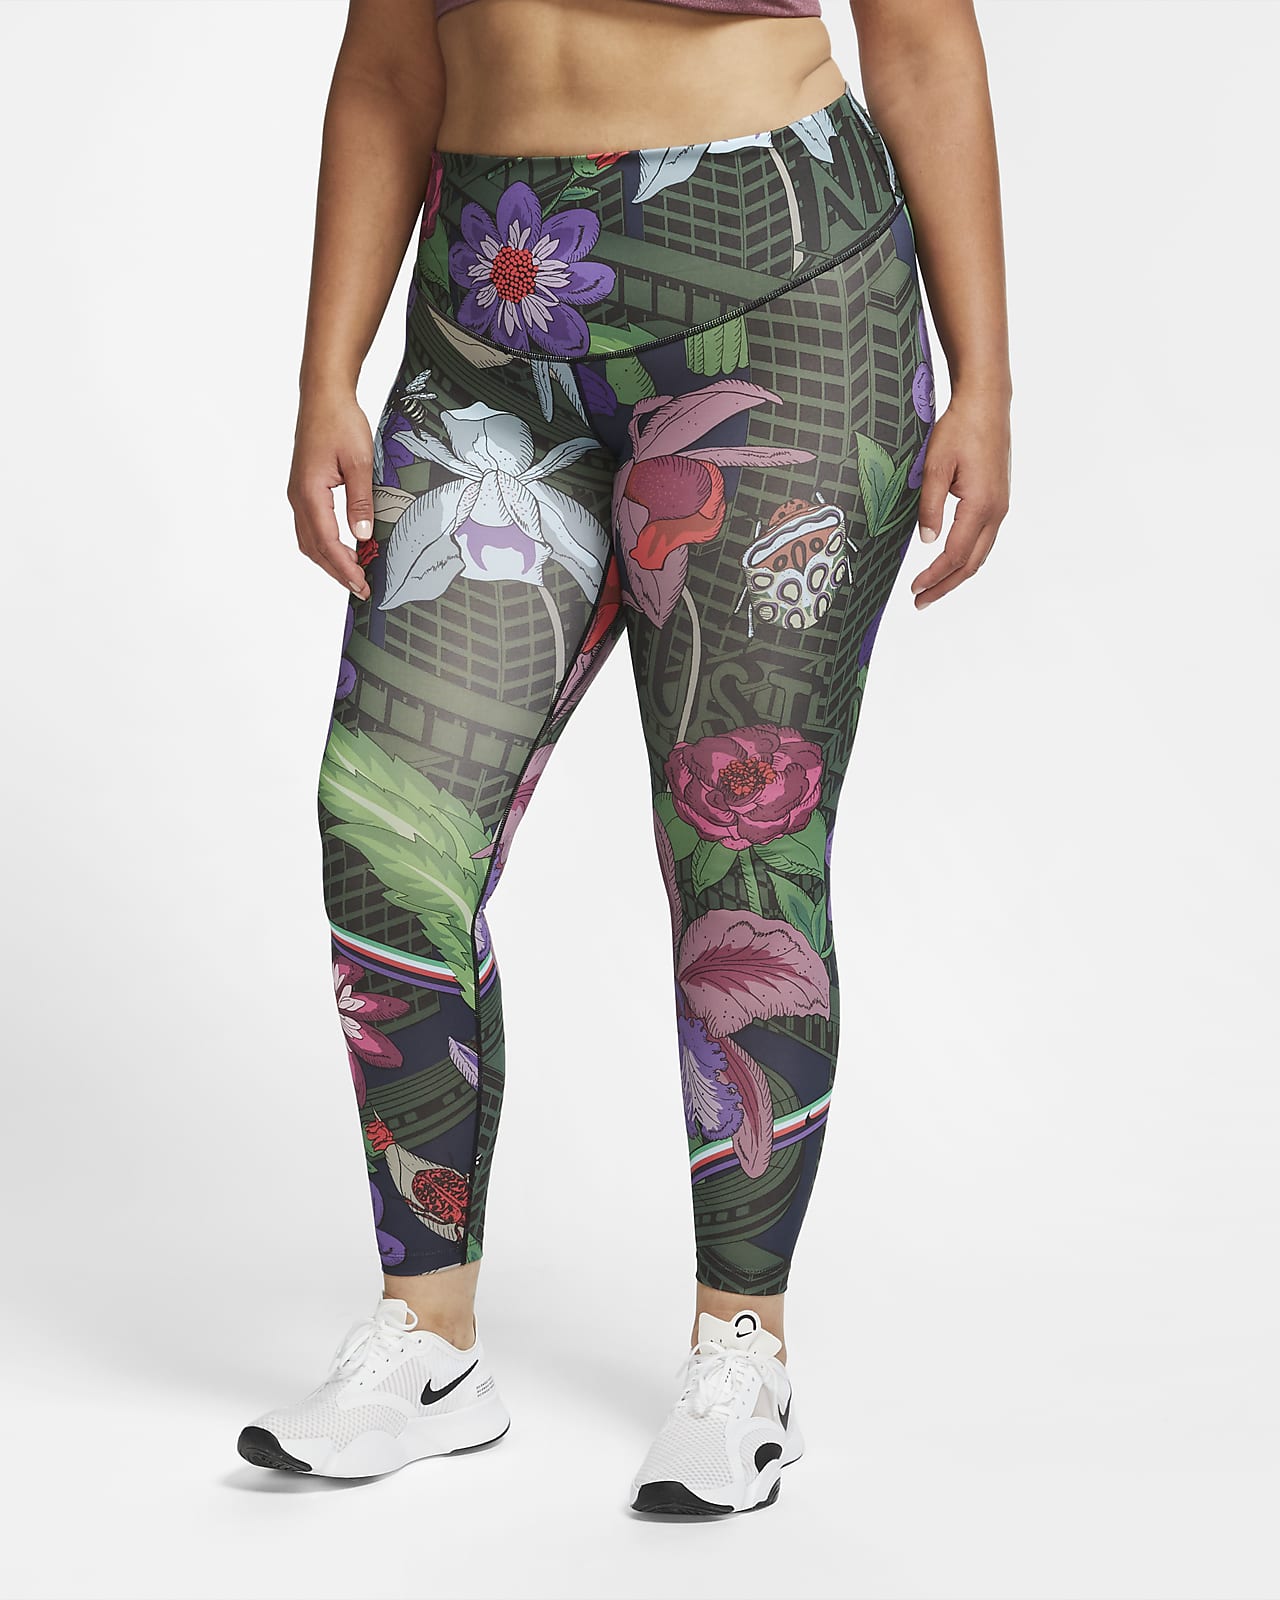 womens printed leggings